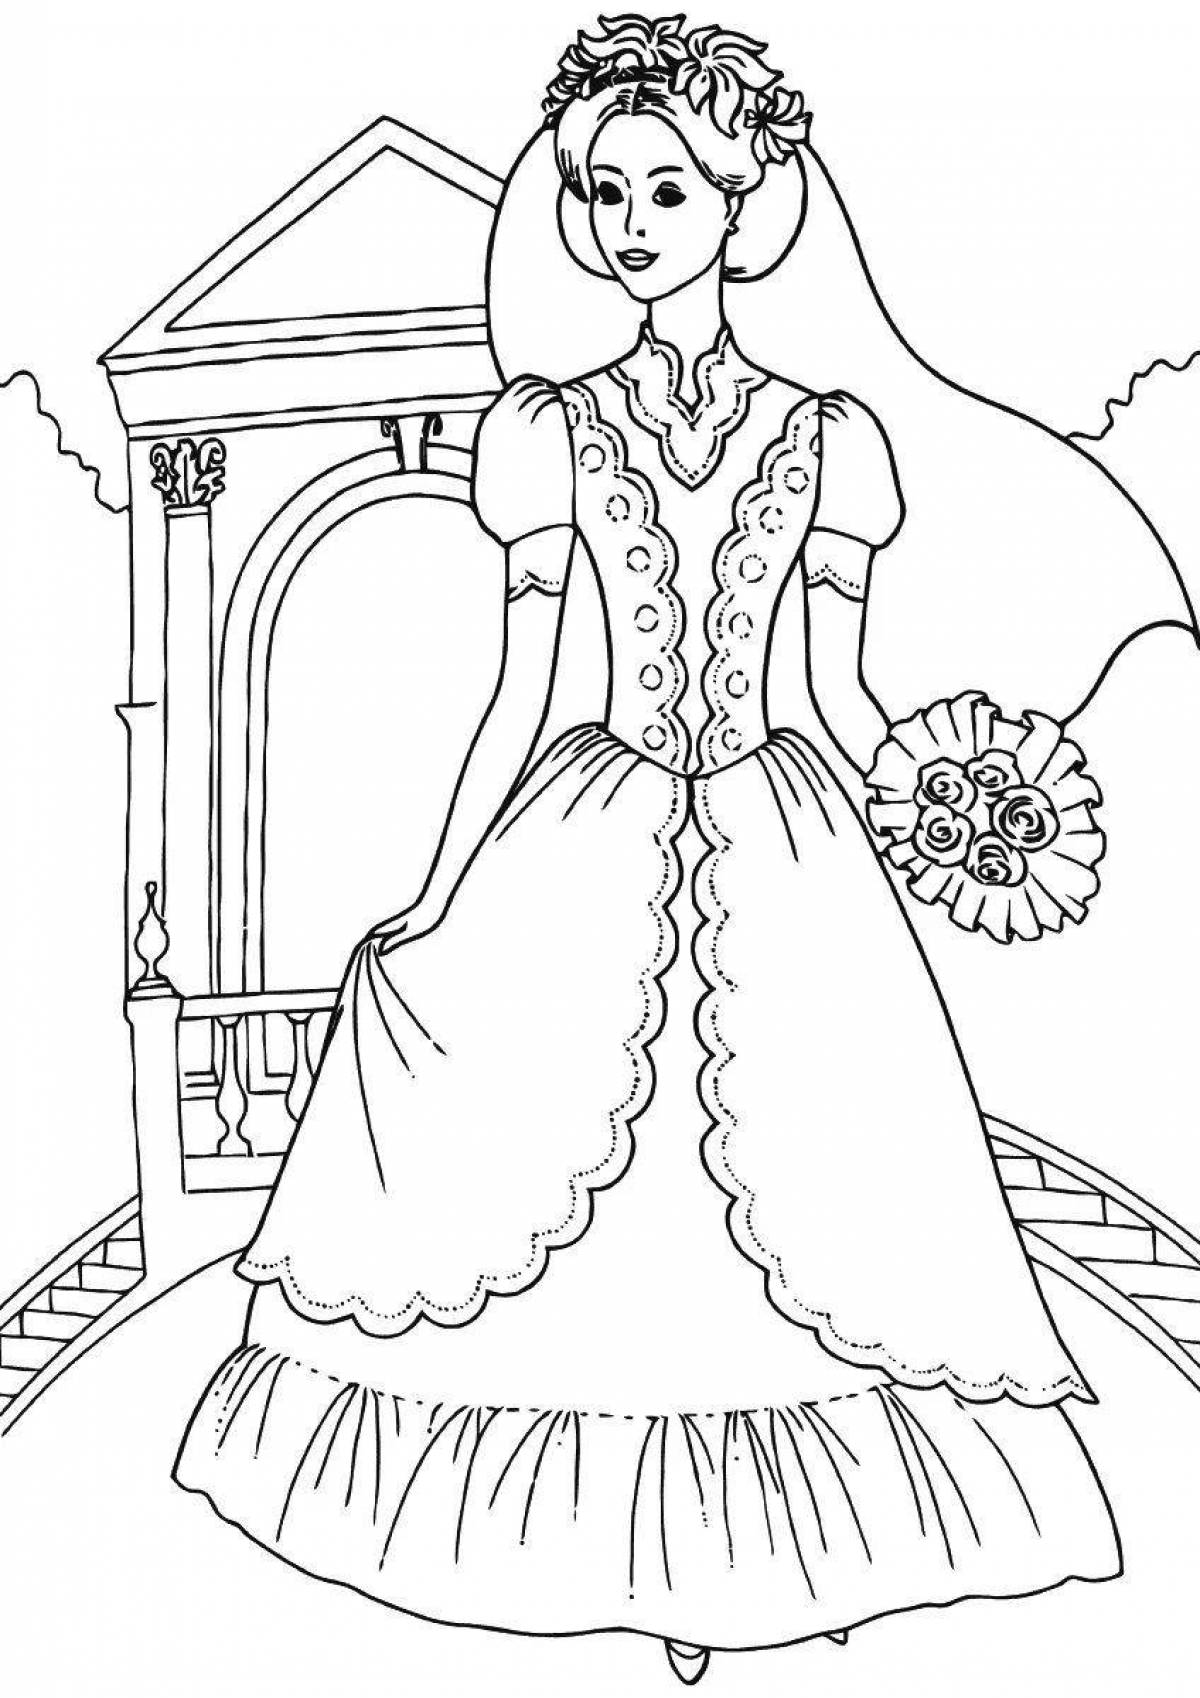 Adorable bride coloring page